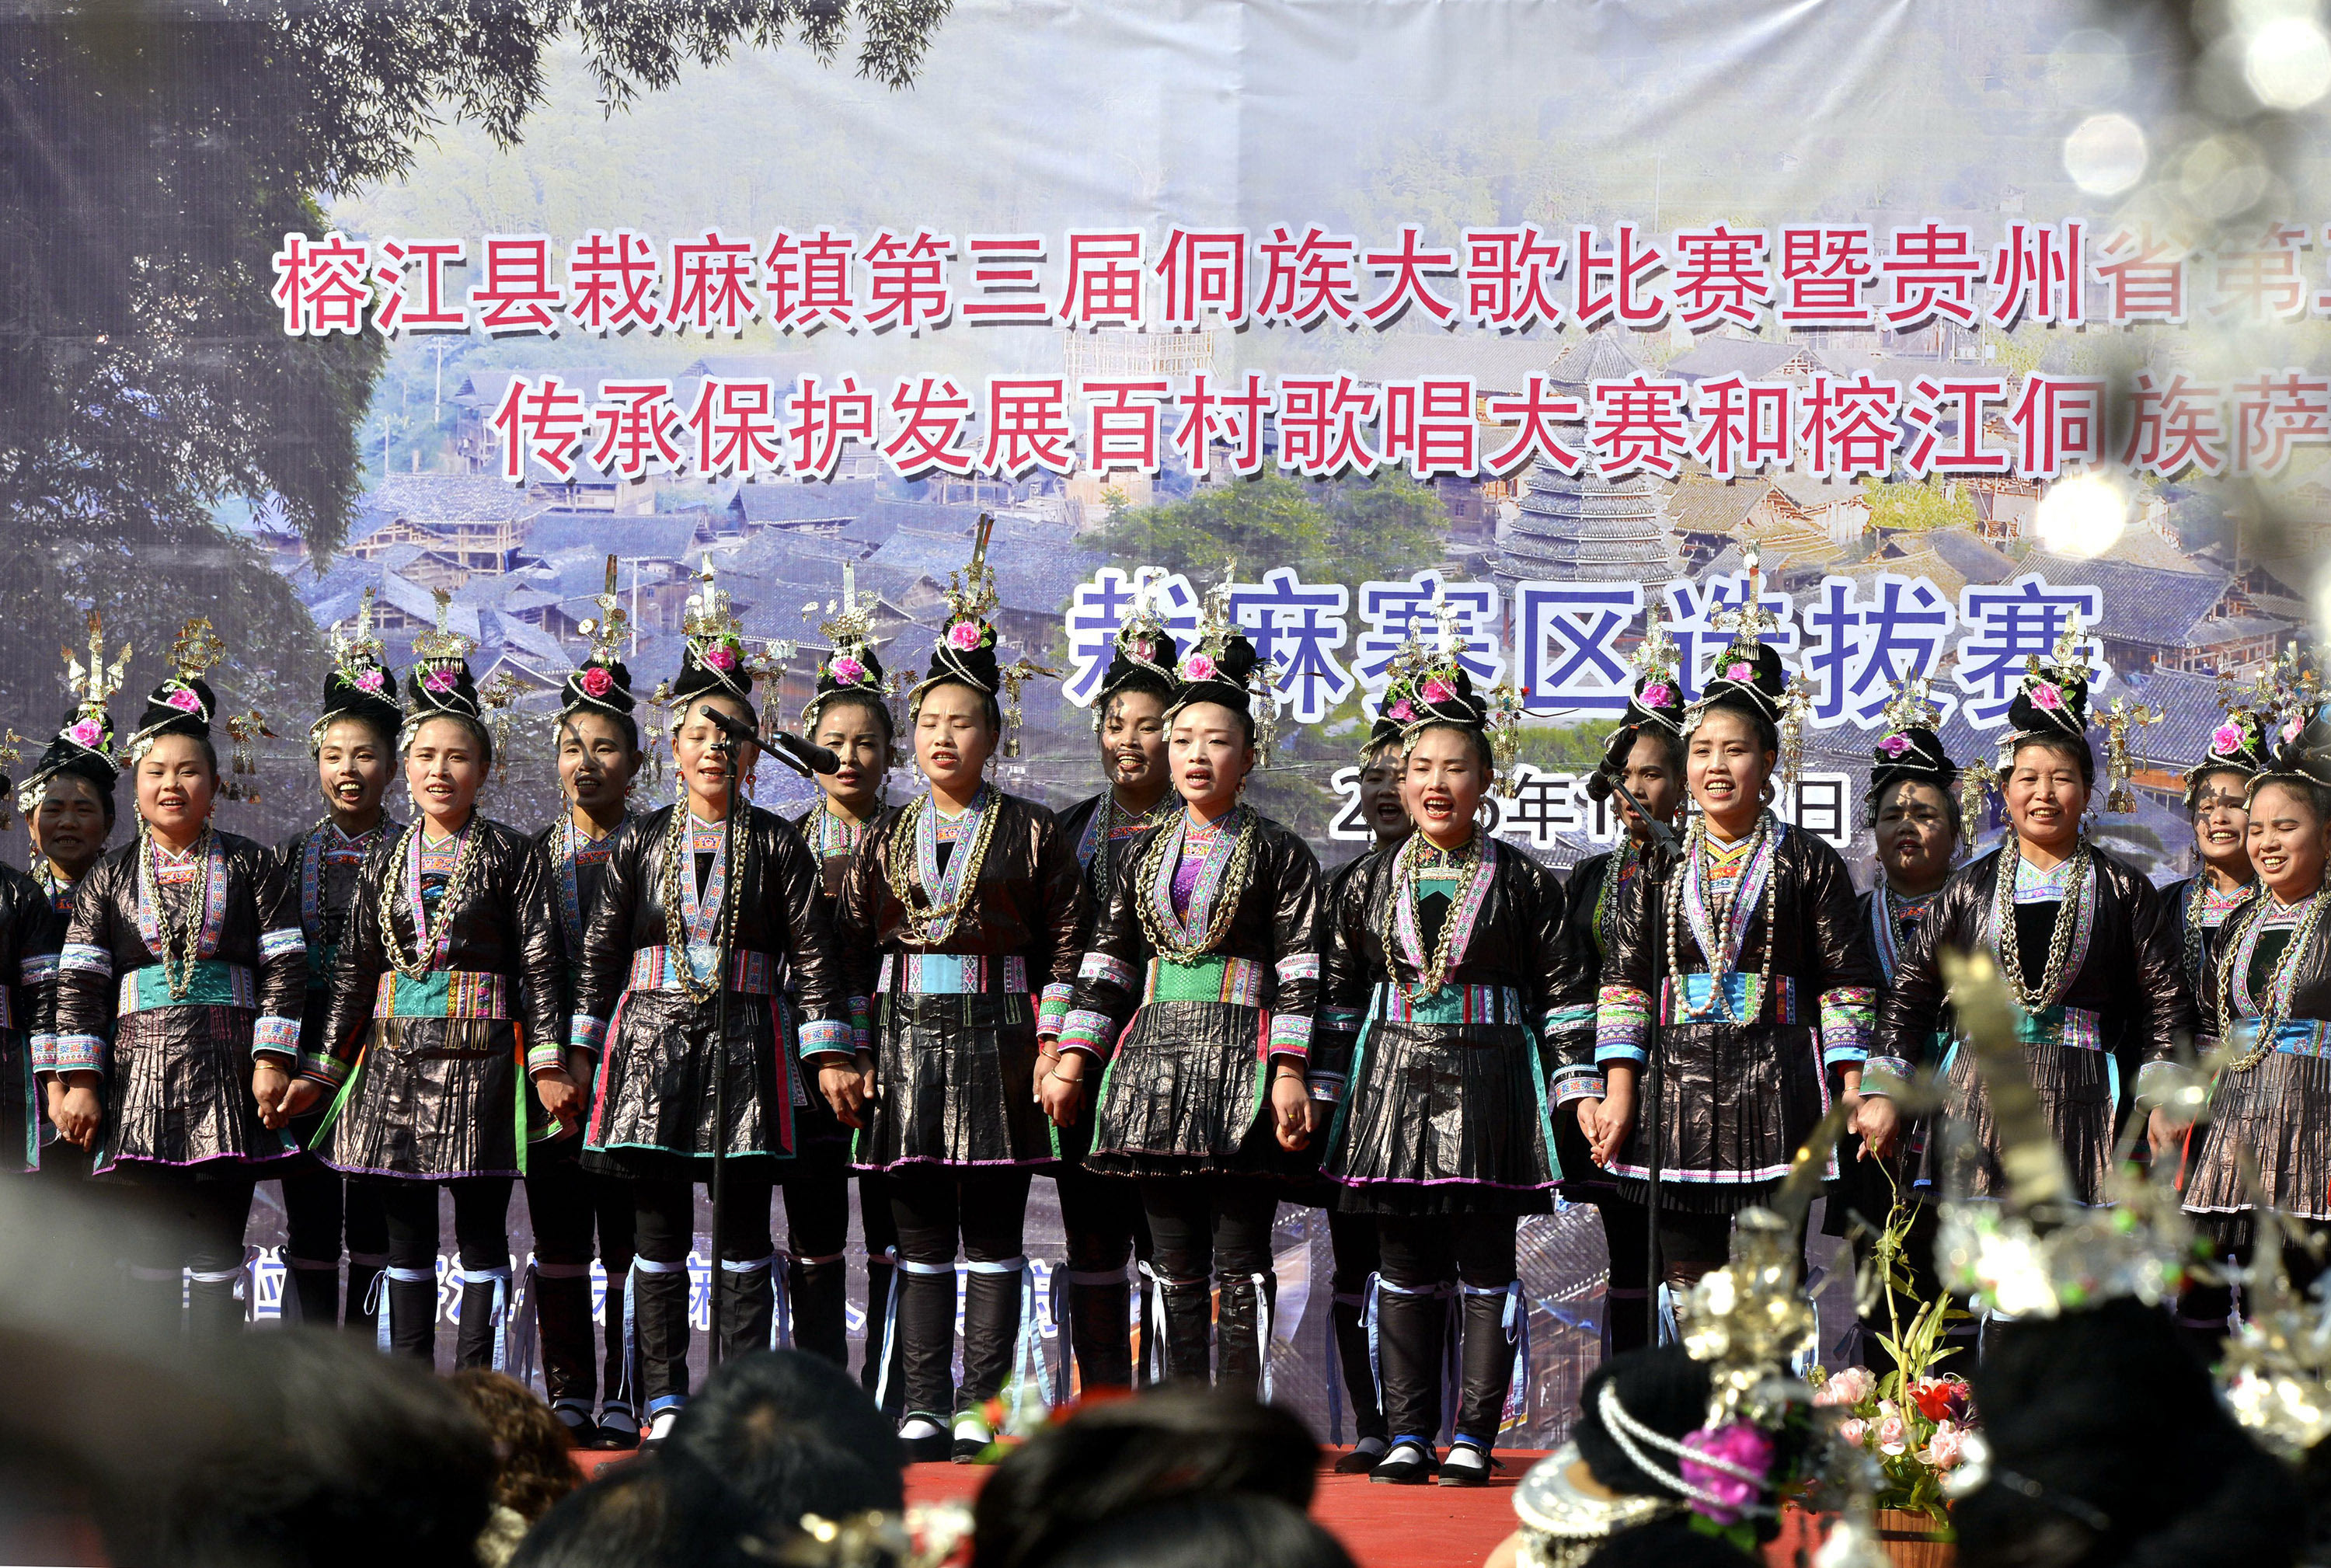 贵州榕江:侗族大歌比赛传承民族文化